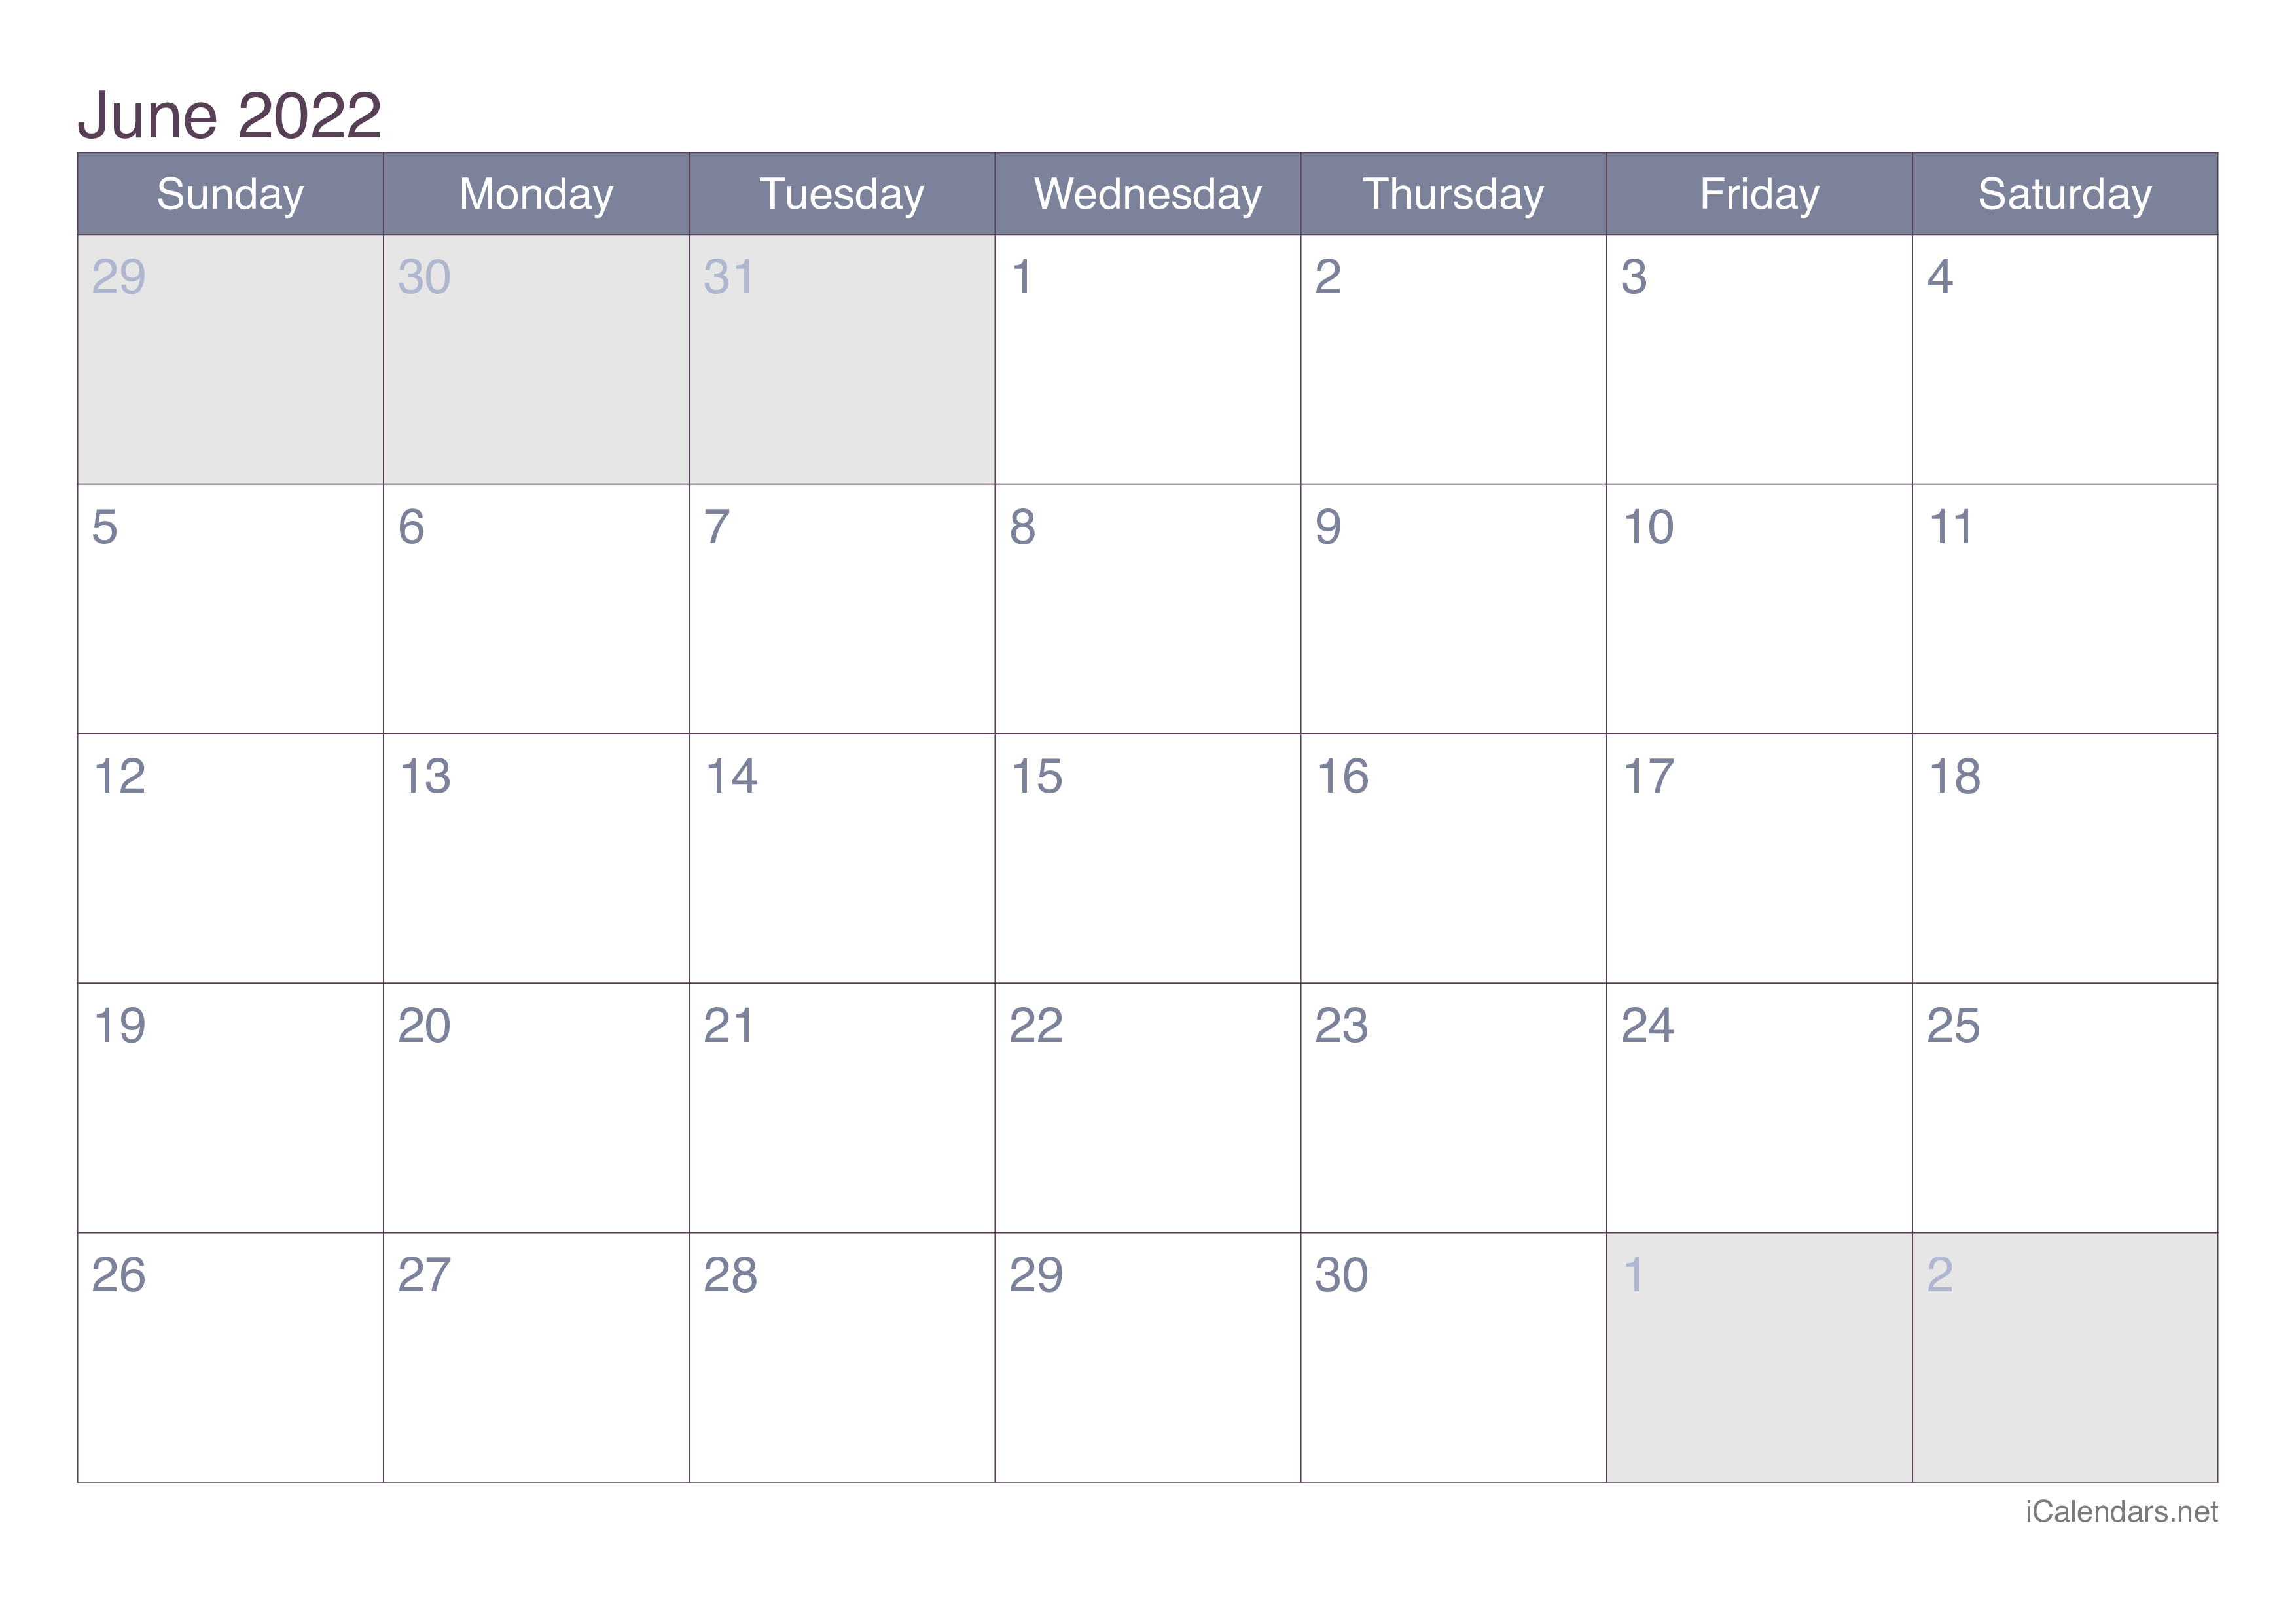 June 2022 Calendar Office